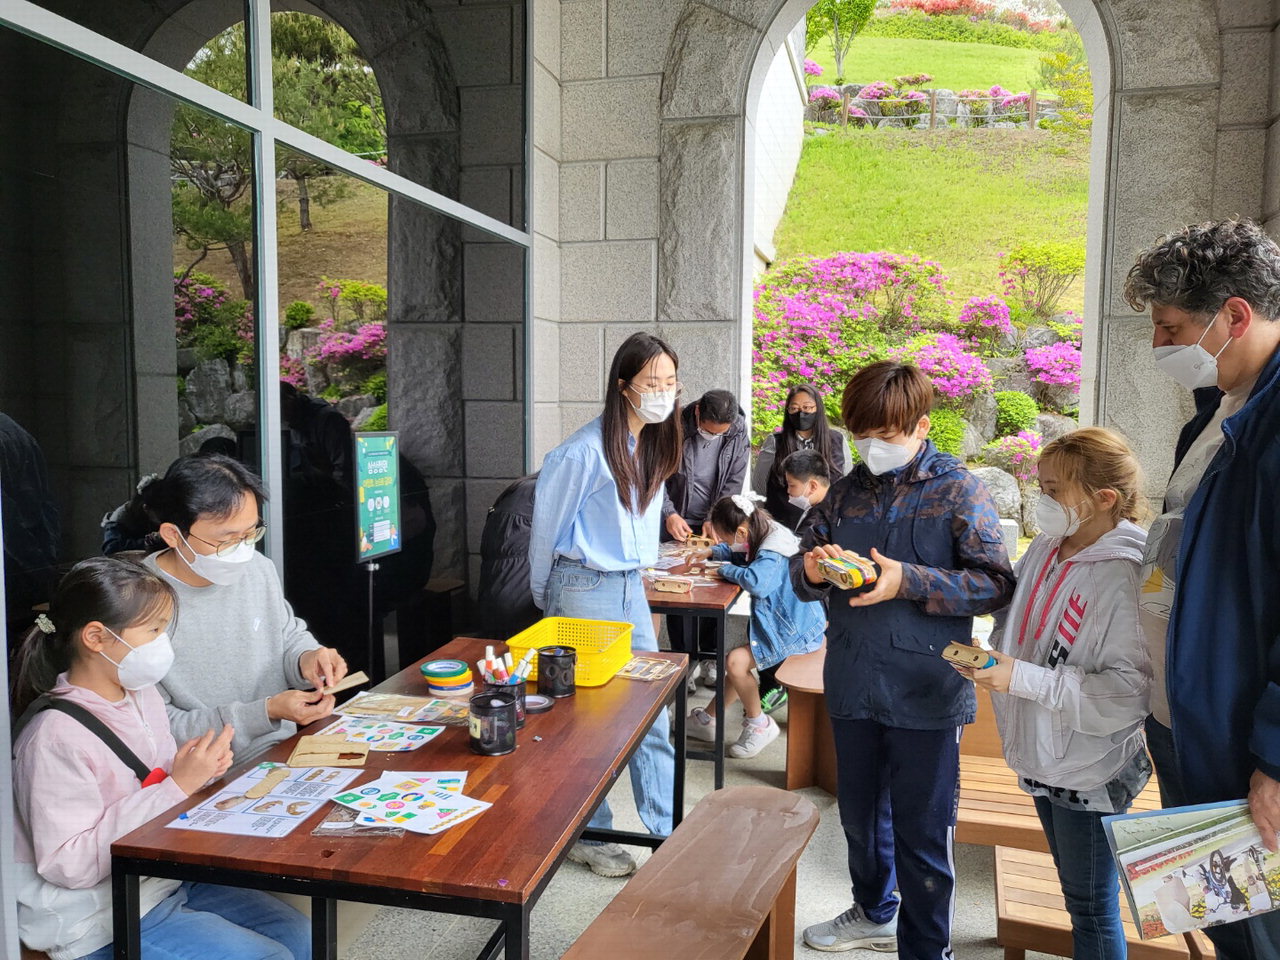 대청호미술관 방문객들이 지난 4월 30일 '대청호, 눈으로 담다' 체험행사에서 배부한 망원경 키트를 만들고 있다. / 대청호미술관